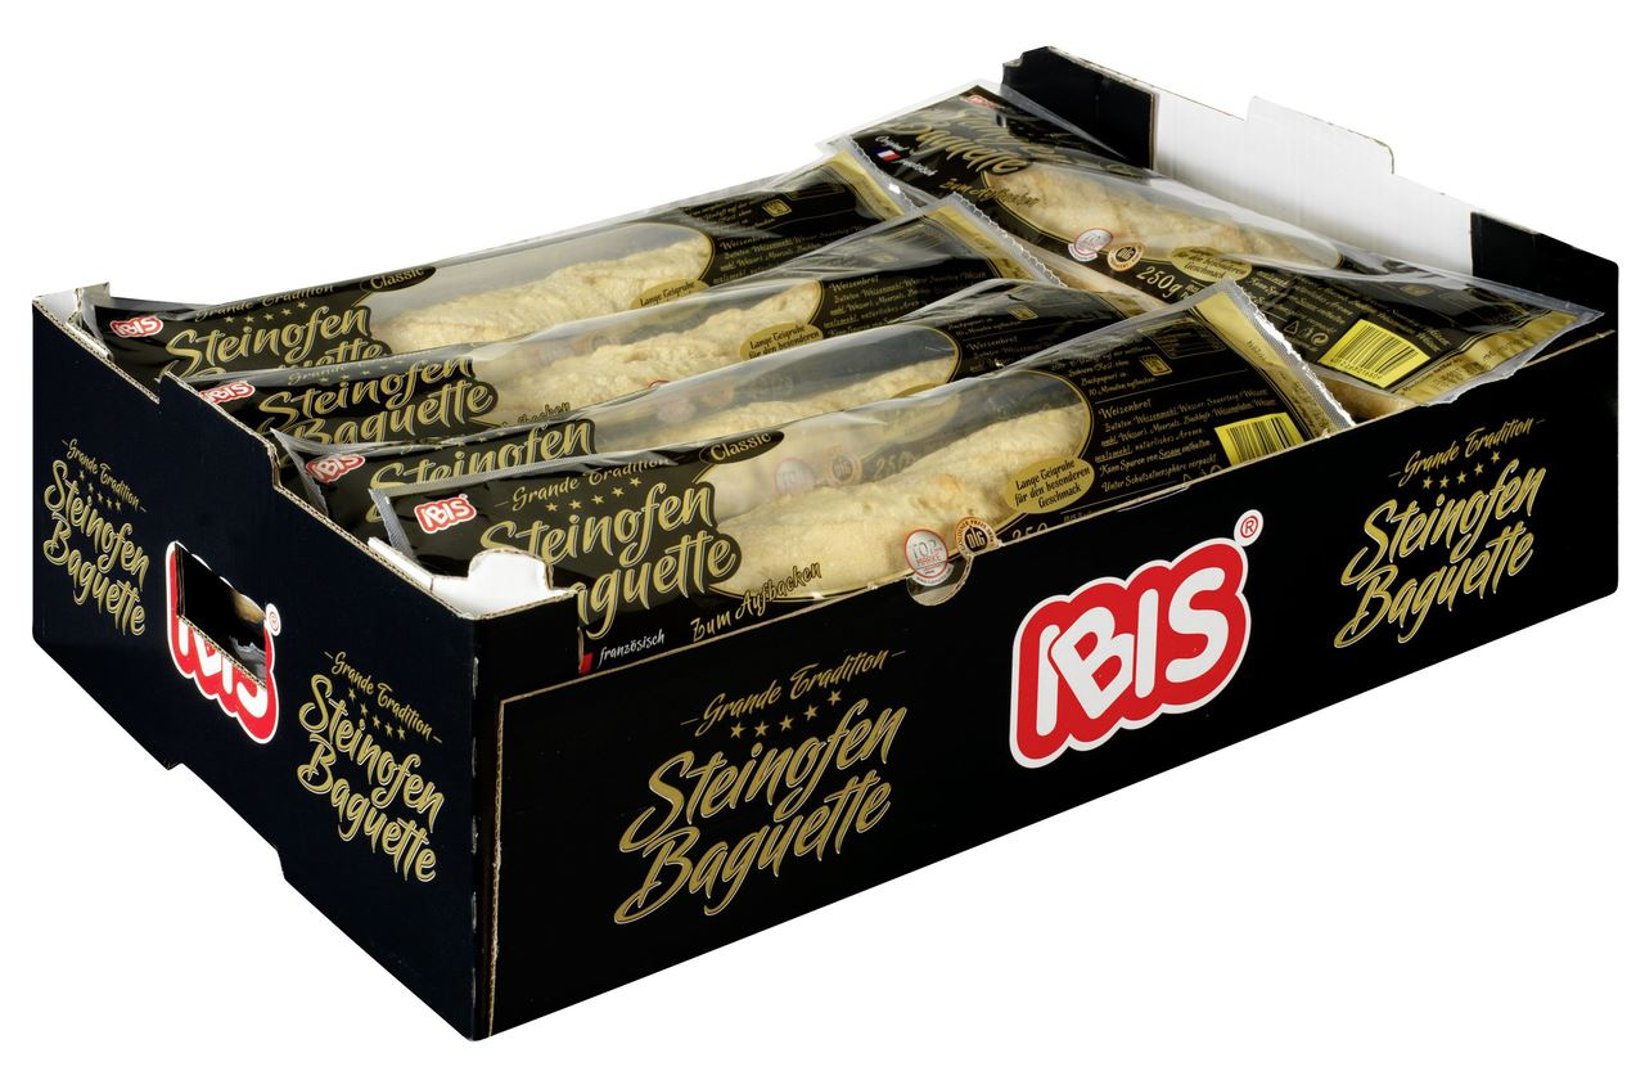 IBIS - Steinofenbaguette vorgebacken, mit Natursauerteig gebacken, mit Meersalz 15 x 250 g Packungen